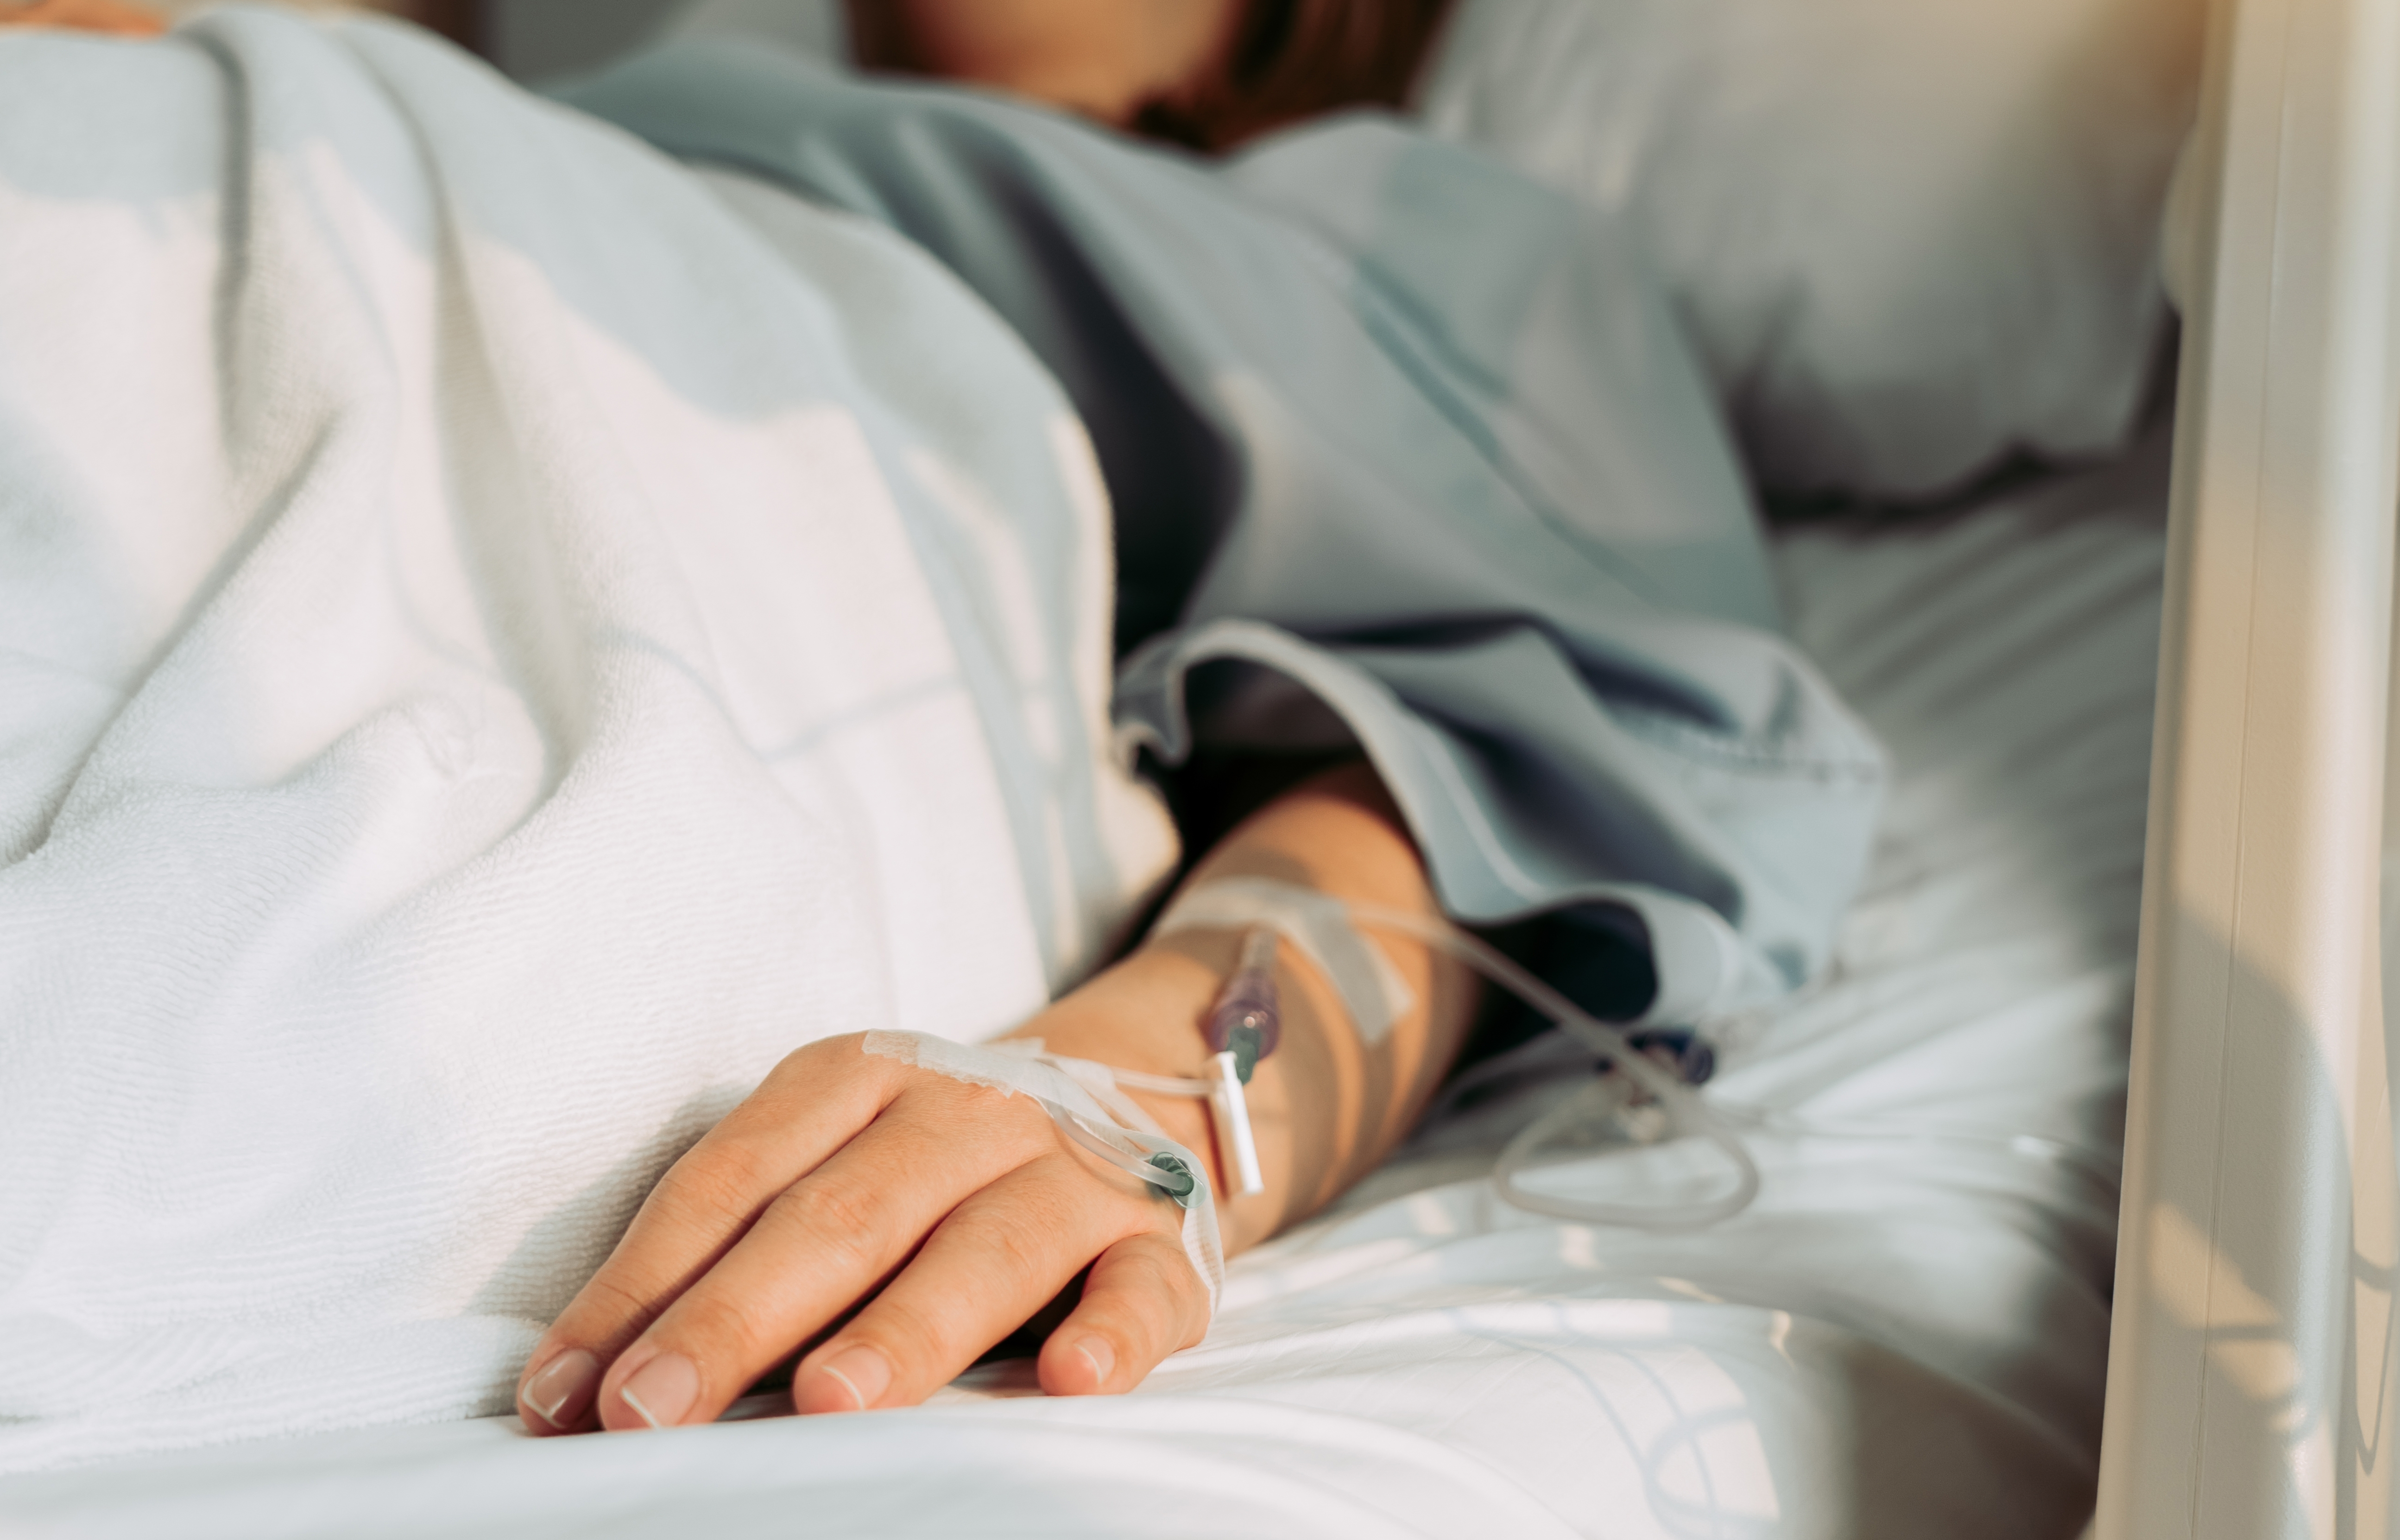 Woman lying sick in hospital | Source: Shutterstock